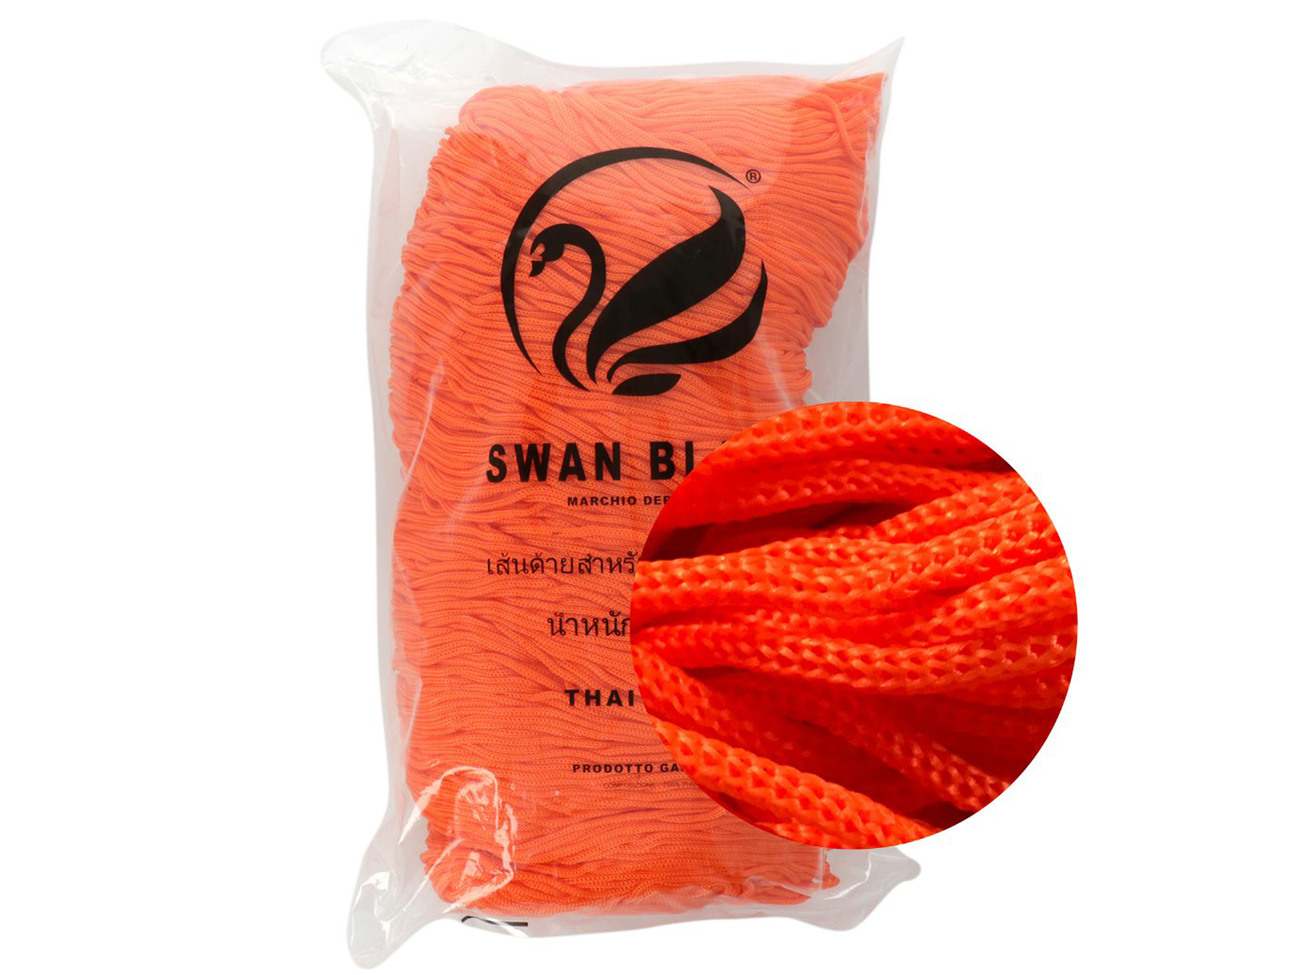 Cordino Thai Swan Black 500 grammi Tre Sfere Colore Arancio-044